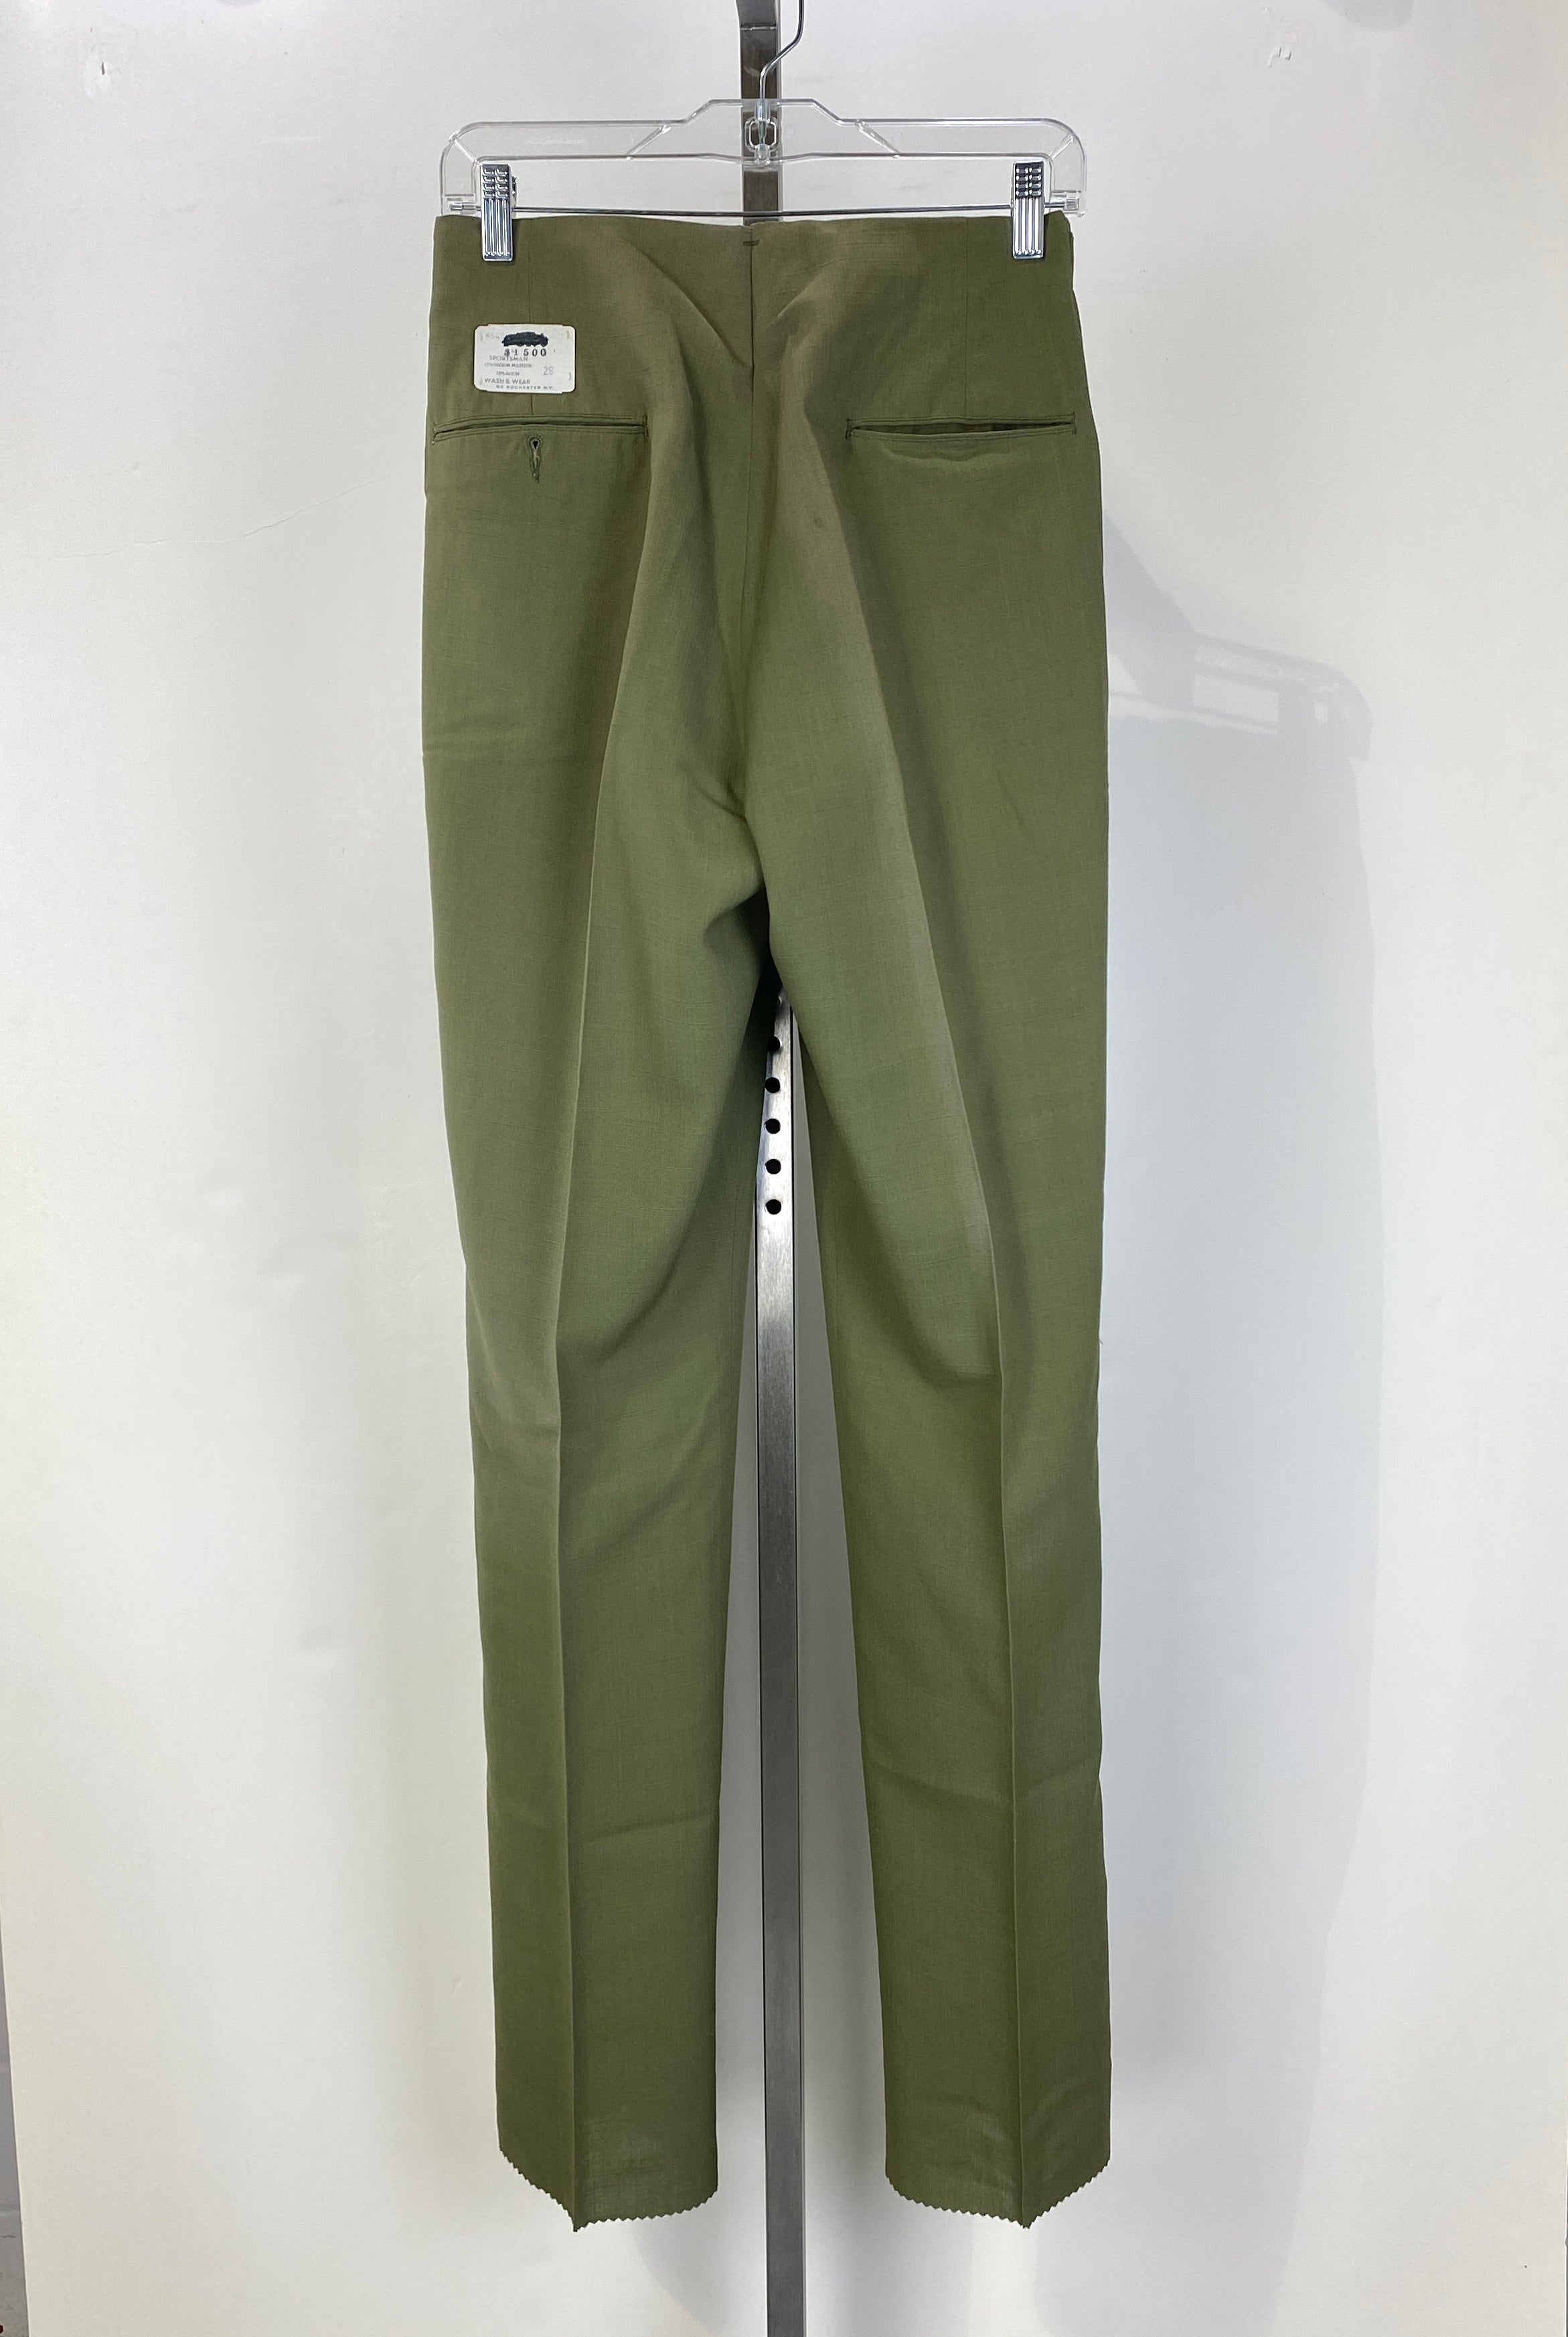 Vintage 1960s Deadstock Green Straight-Leg Slacks, Men's Polyester